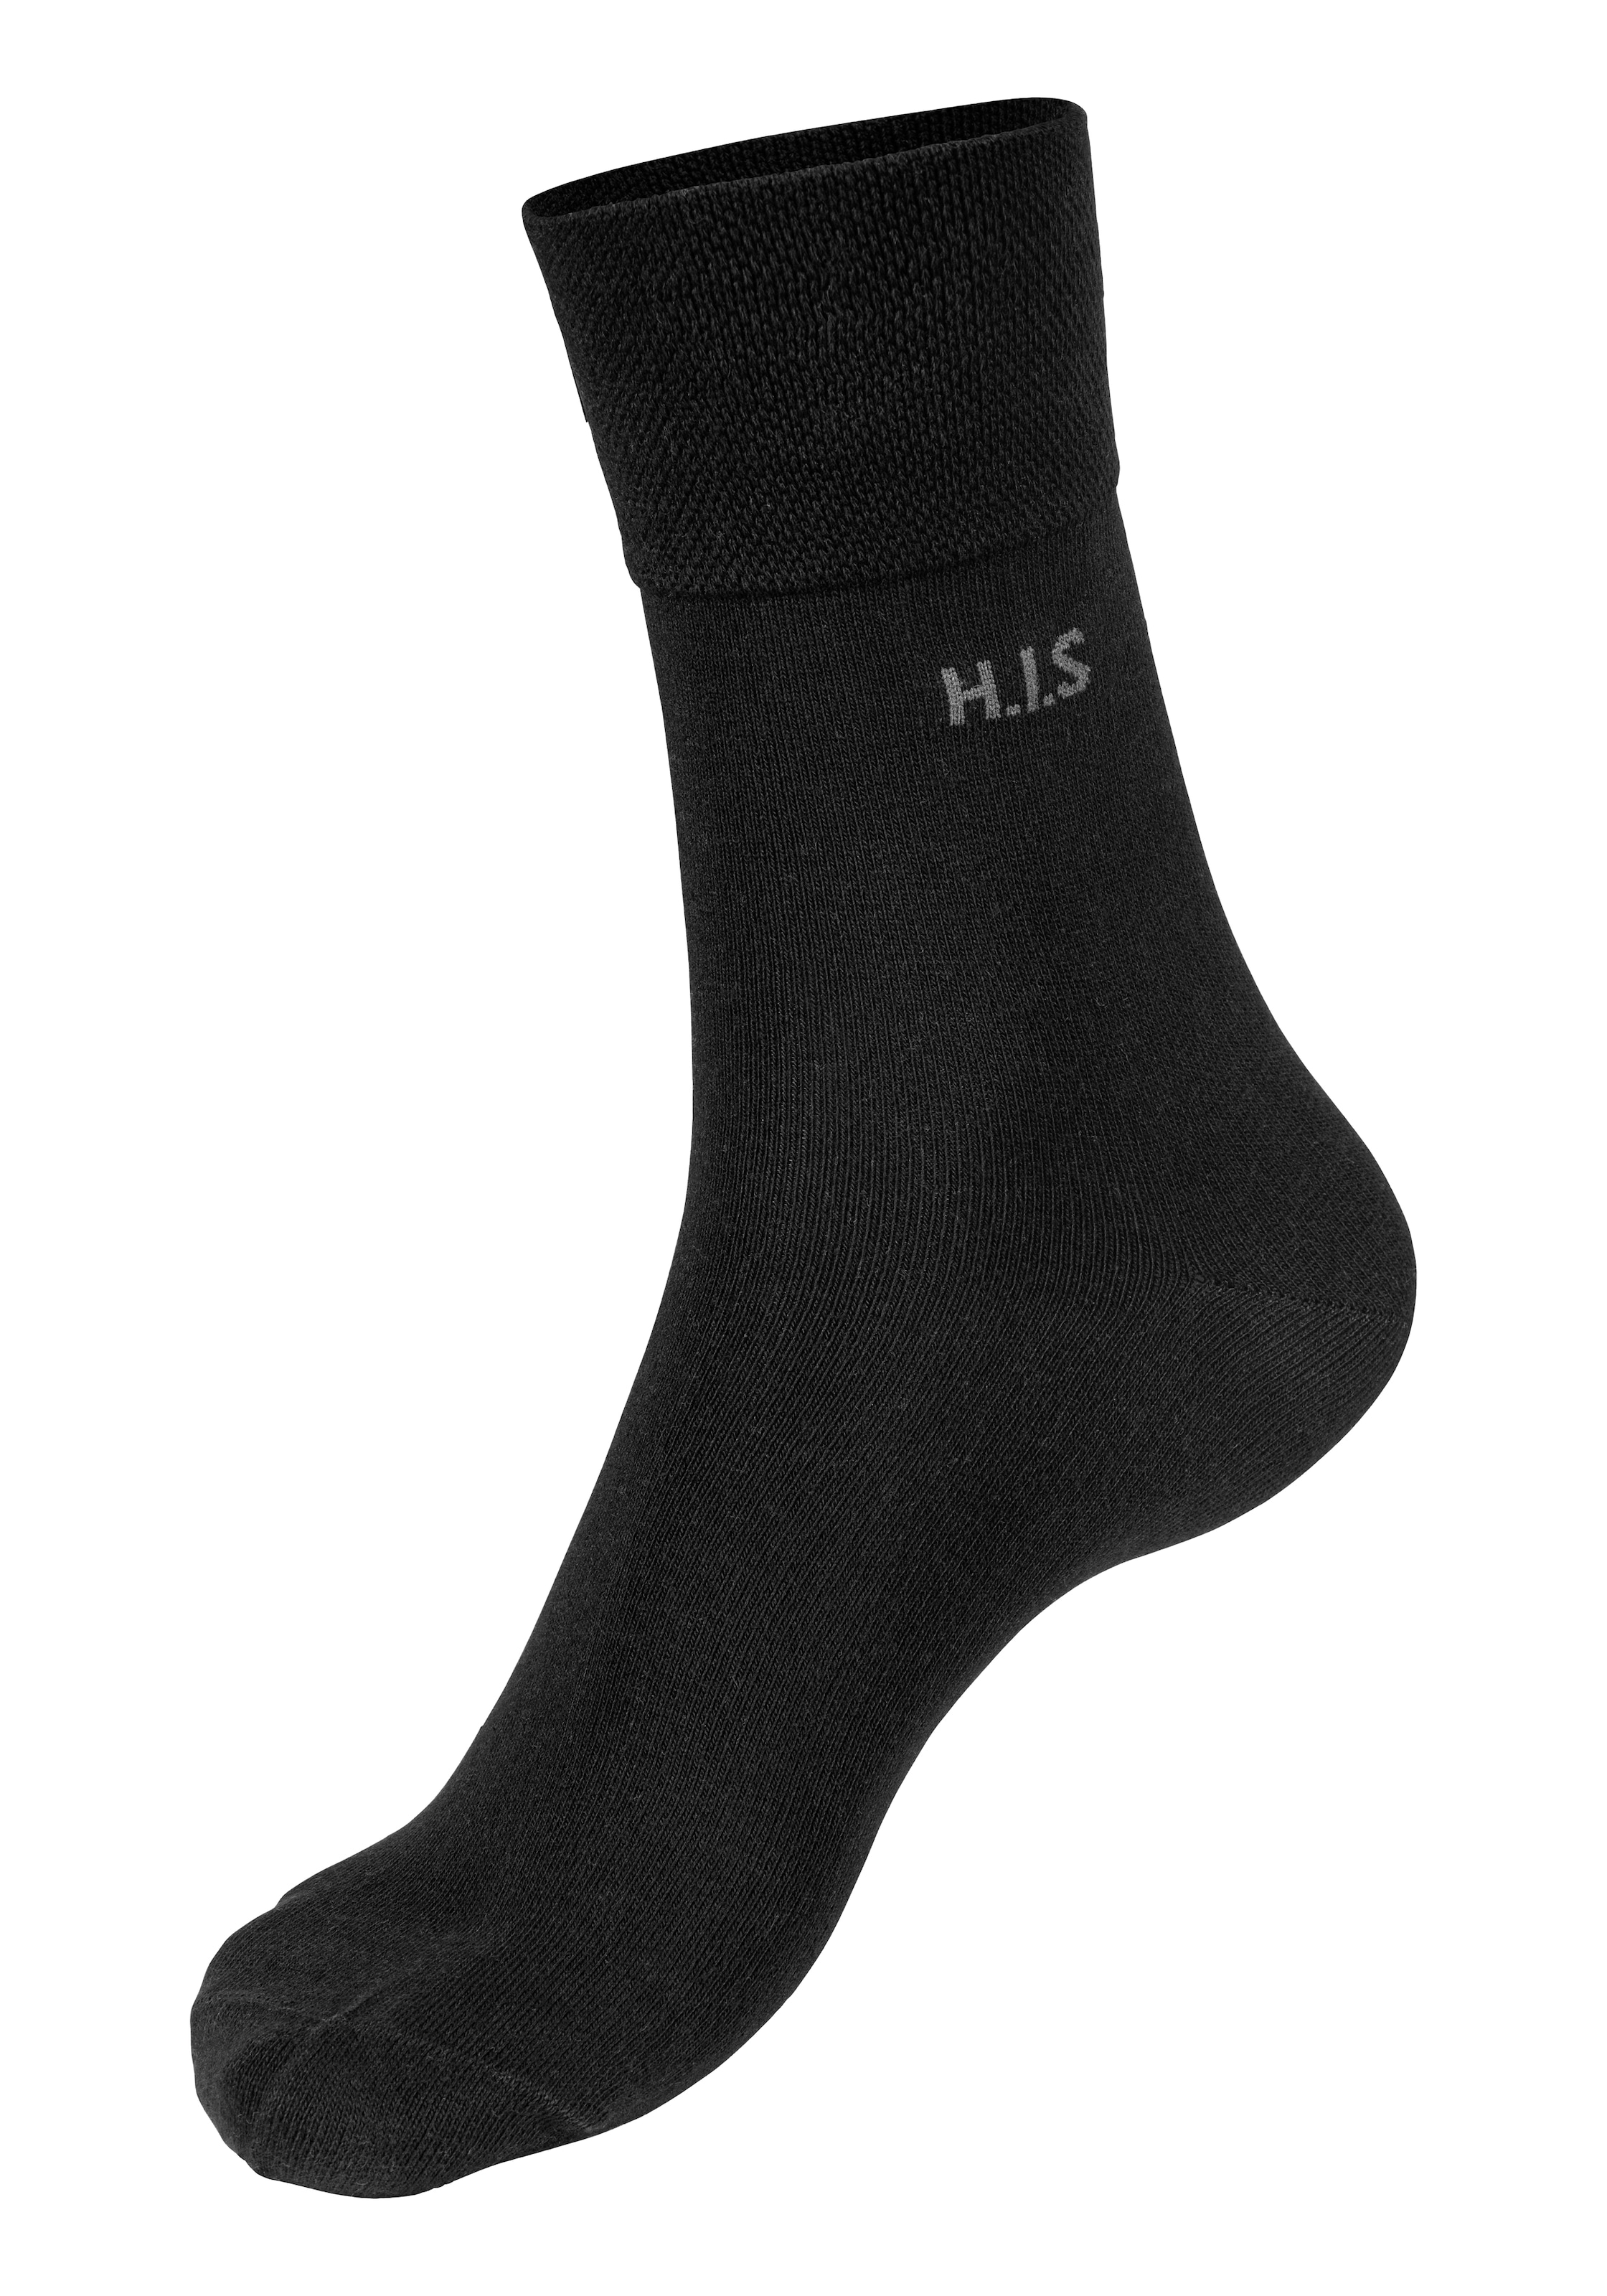 H.I.S Socken (Packung ohne Paar) einschneidendes Gummi 12